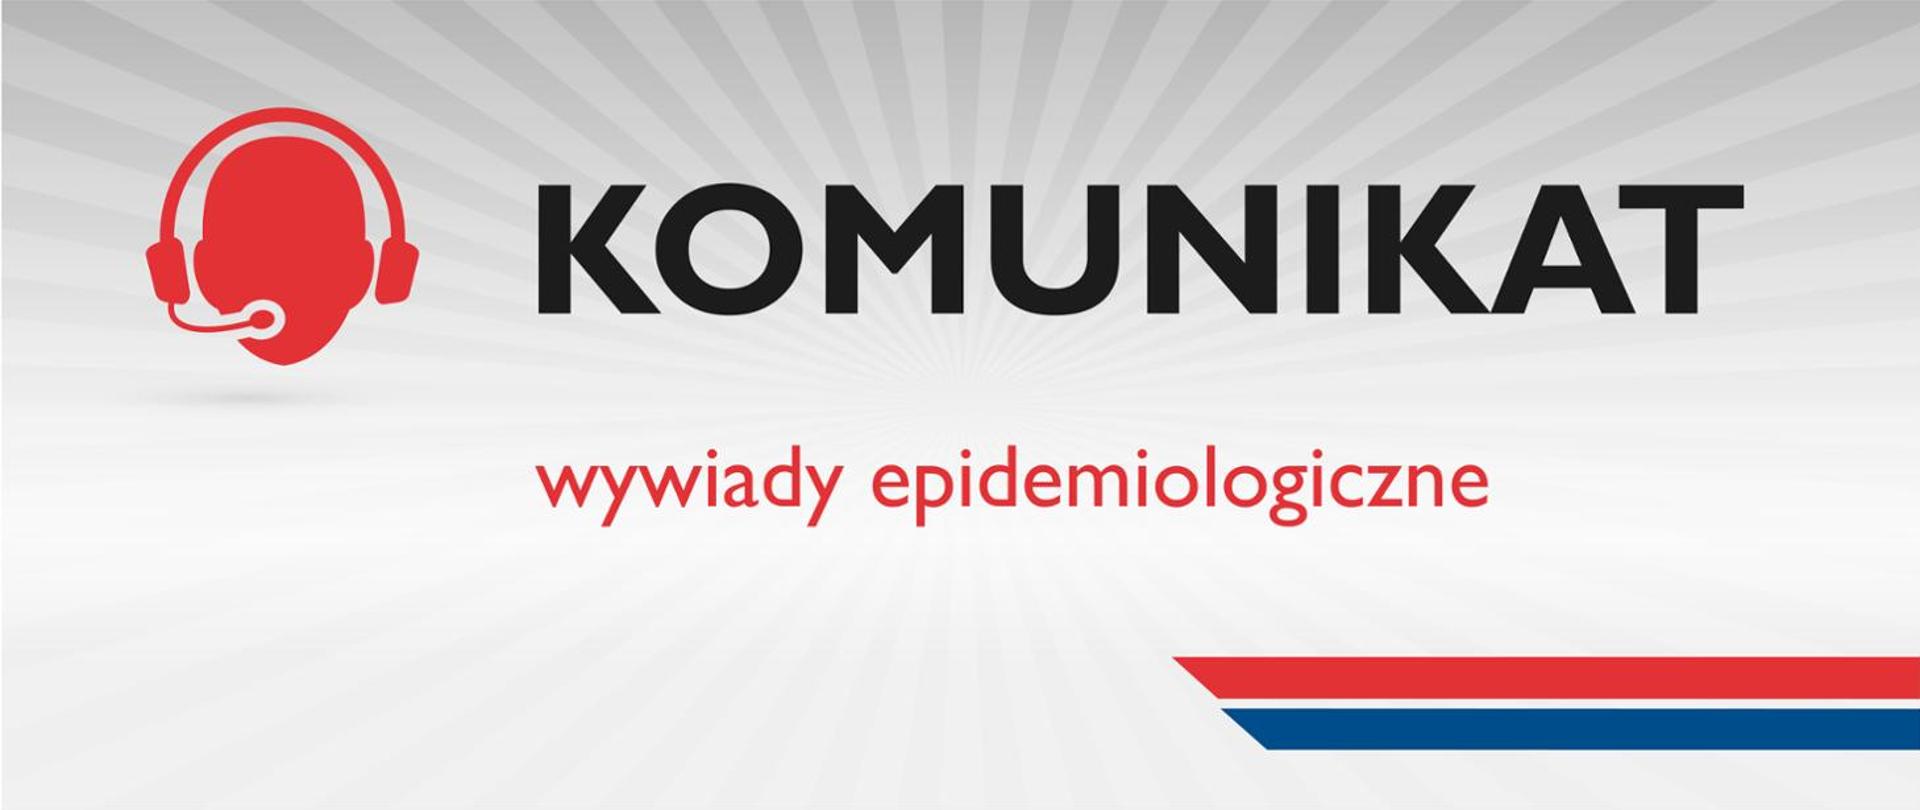 Komunikat_wywiady_epidemiologiczne_1460x616